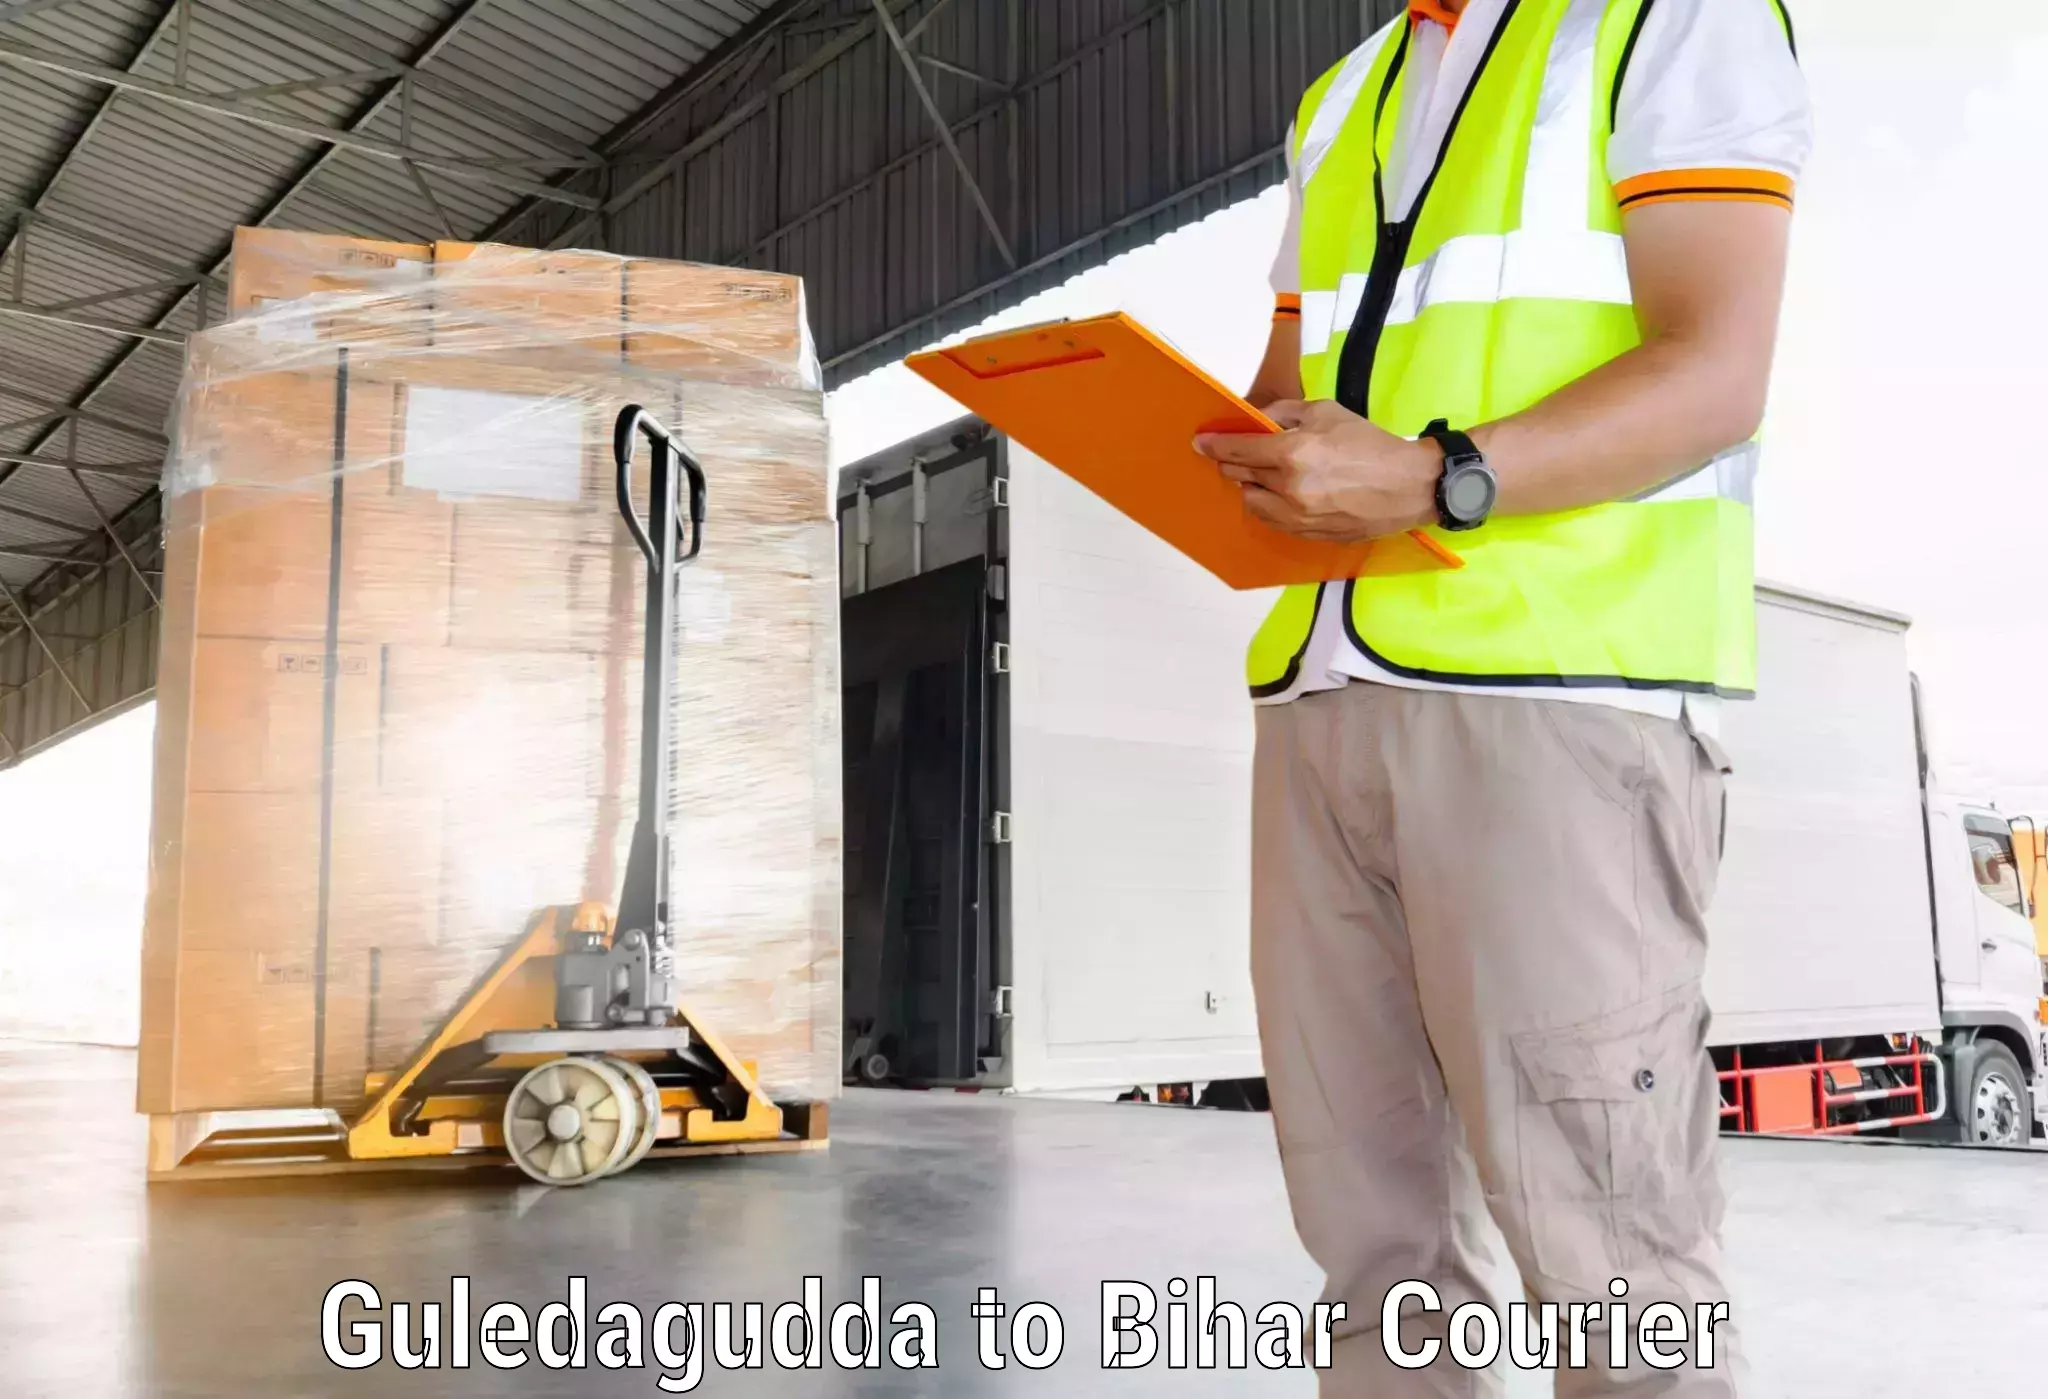 Courier services in Guledagudda to Bettiah